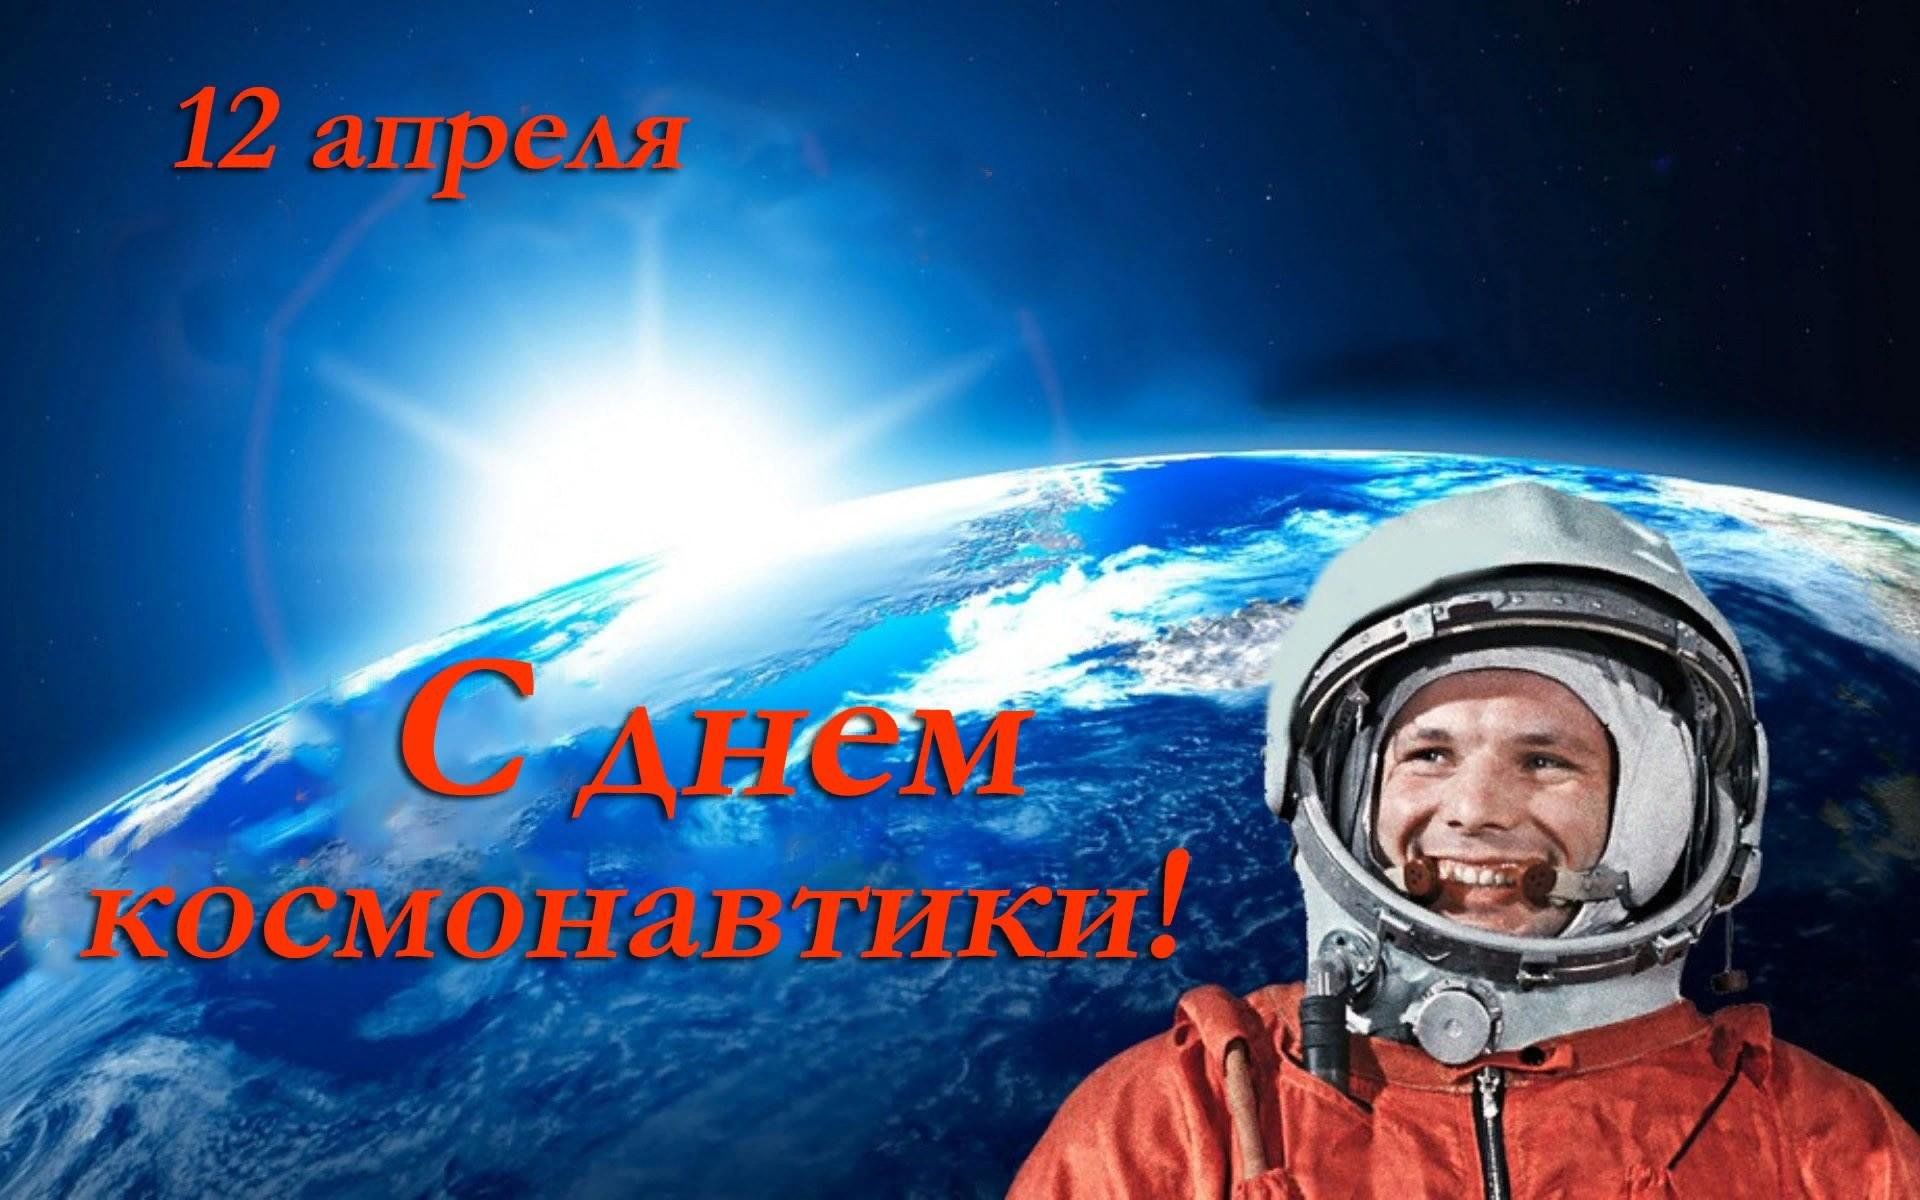 Международный день космоса